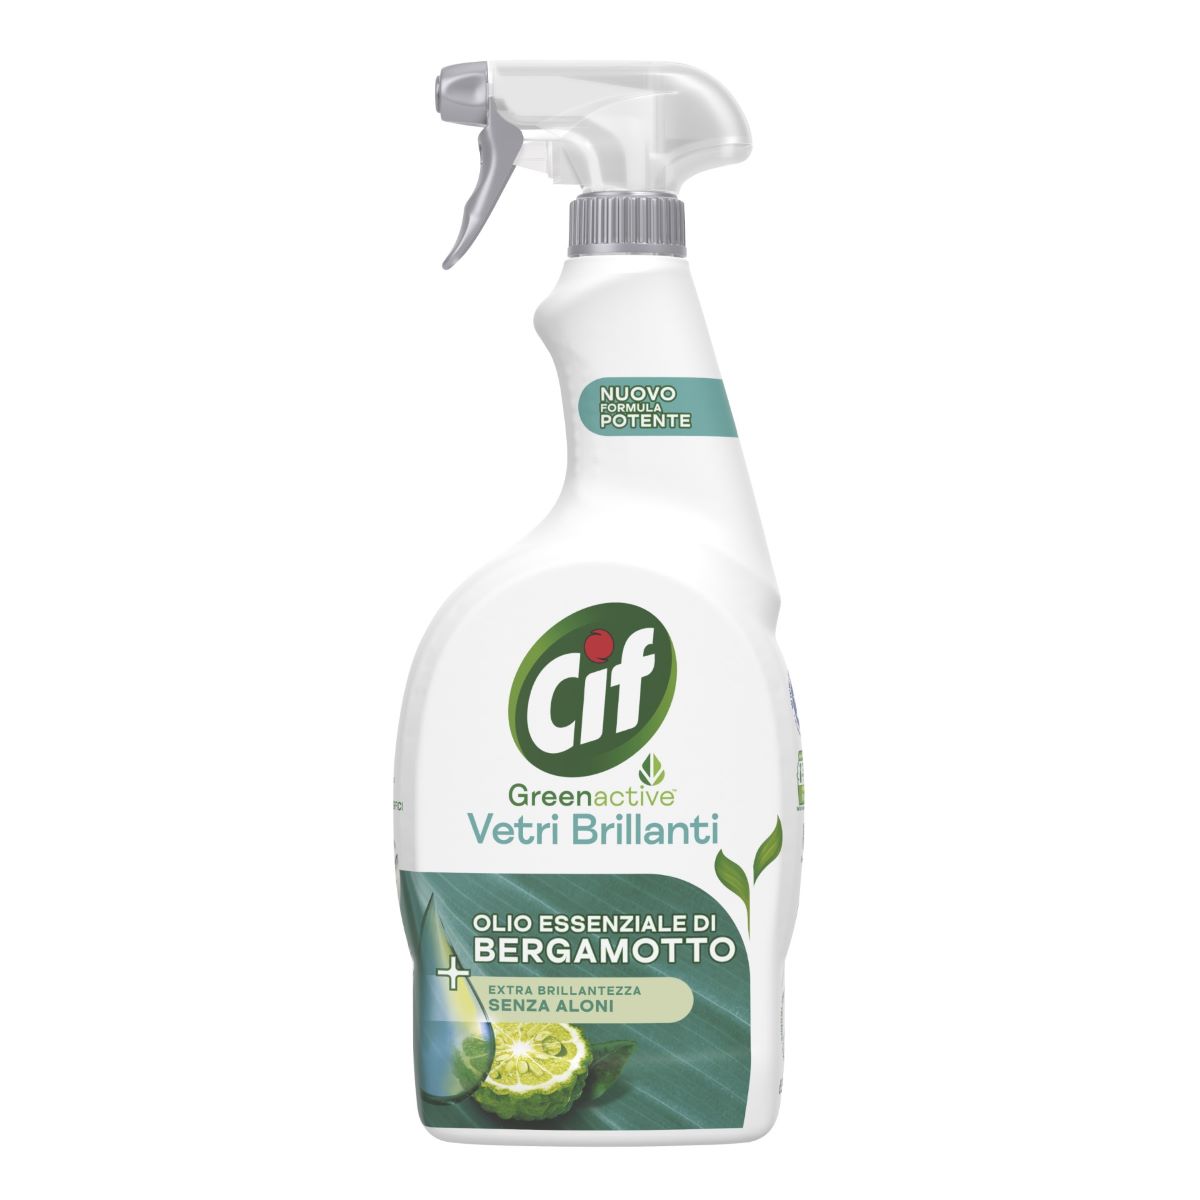 Green Retail  - Cif lancia gli spray Greenactive nel segno della sostenibilità 